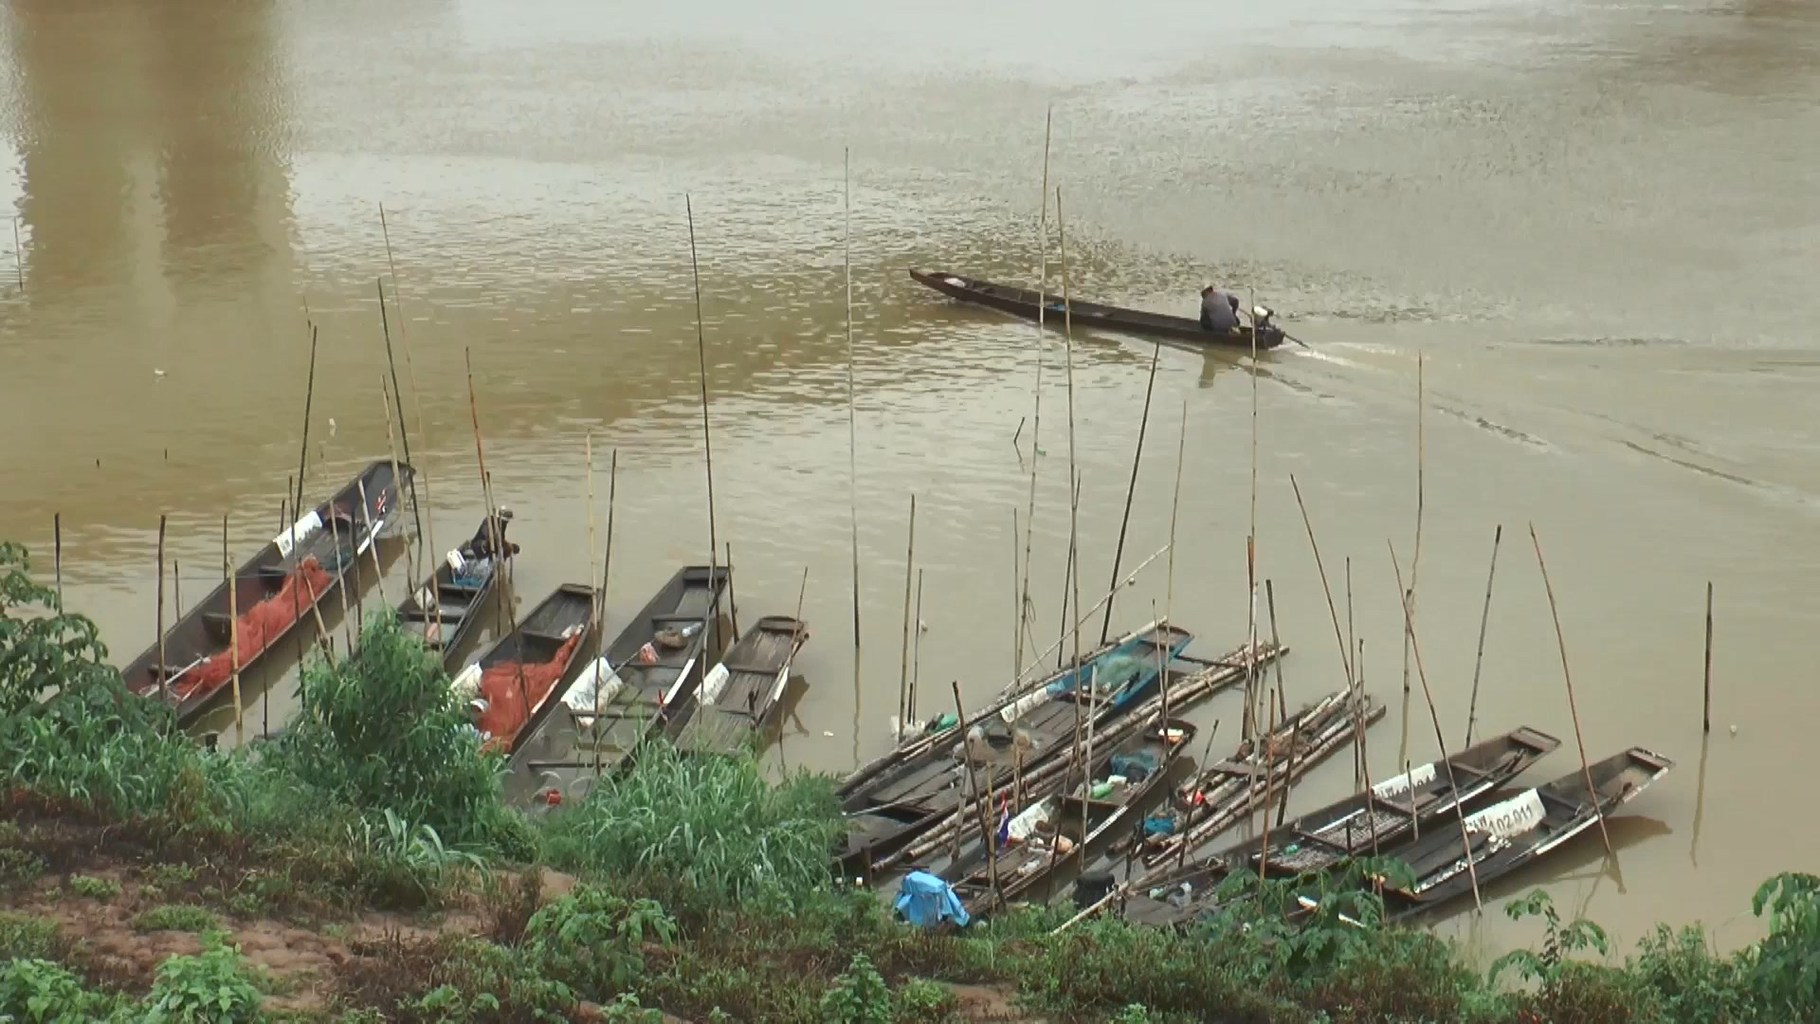 Laoští rybáři na řece Mekong